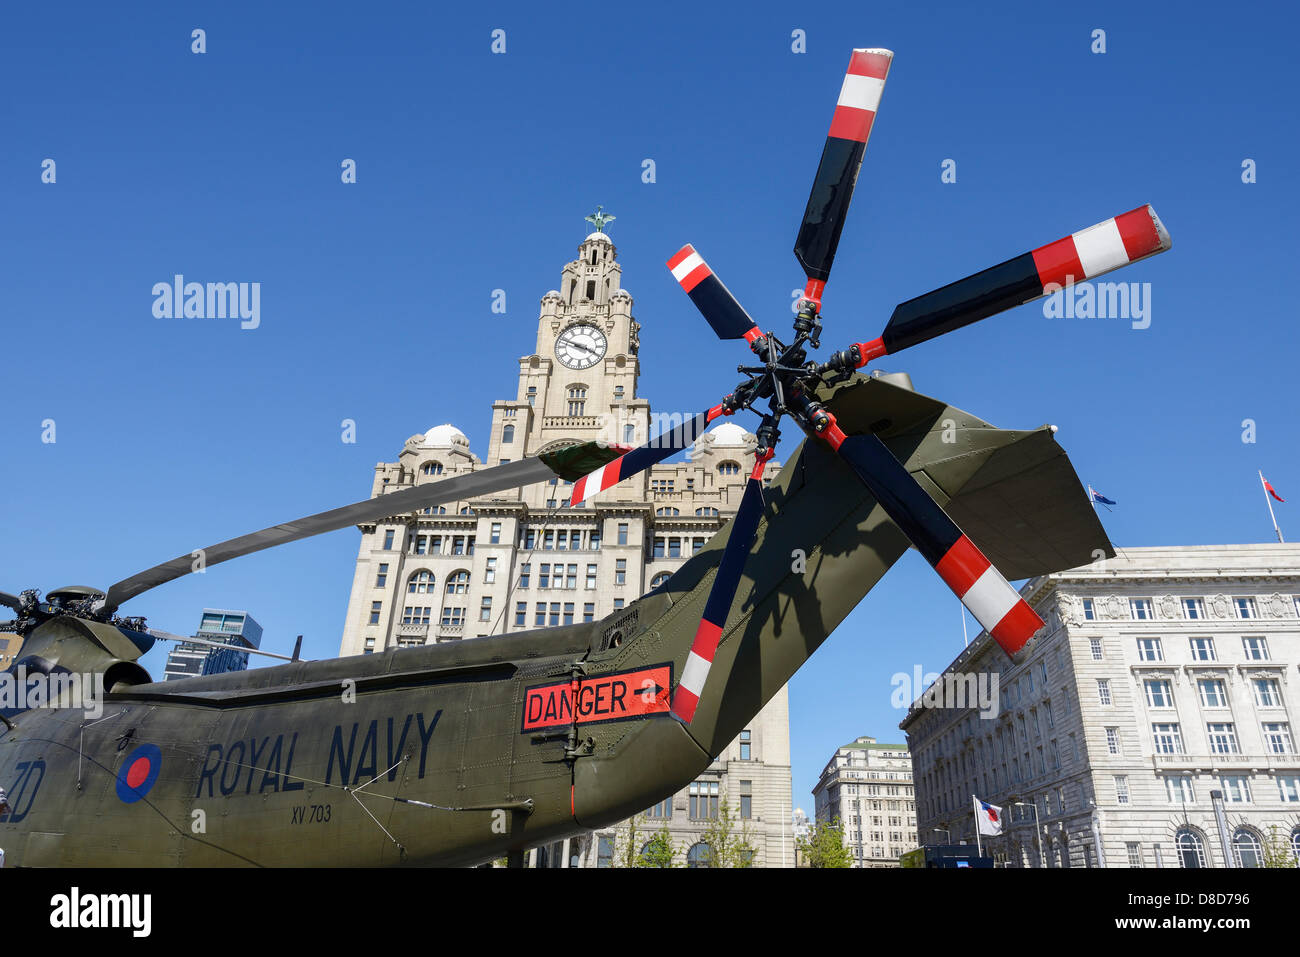 Liverpool, Royaume-Uni. 25 mai 2013. Dans le cadre du 70e anniversaire de la bataille de l'Atlantique, un hélicoptère de la Marine royale est placé en face de l'immeuble du foie à la Pier Head dans le cadre du festival week-end d'activités. Crédit : Andrew Paterson/Alamy Live News Banque D'Images